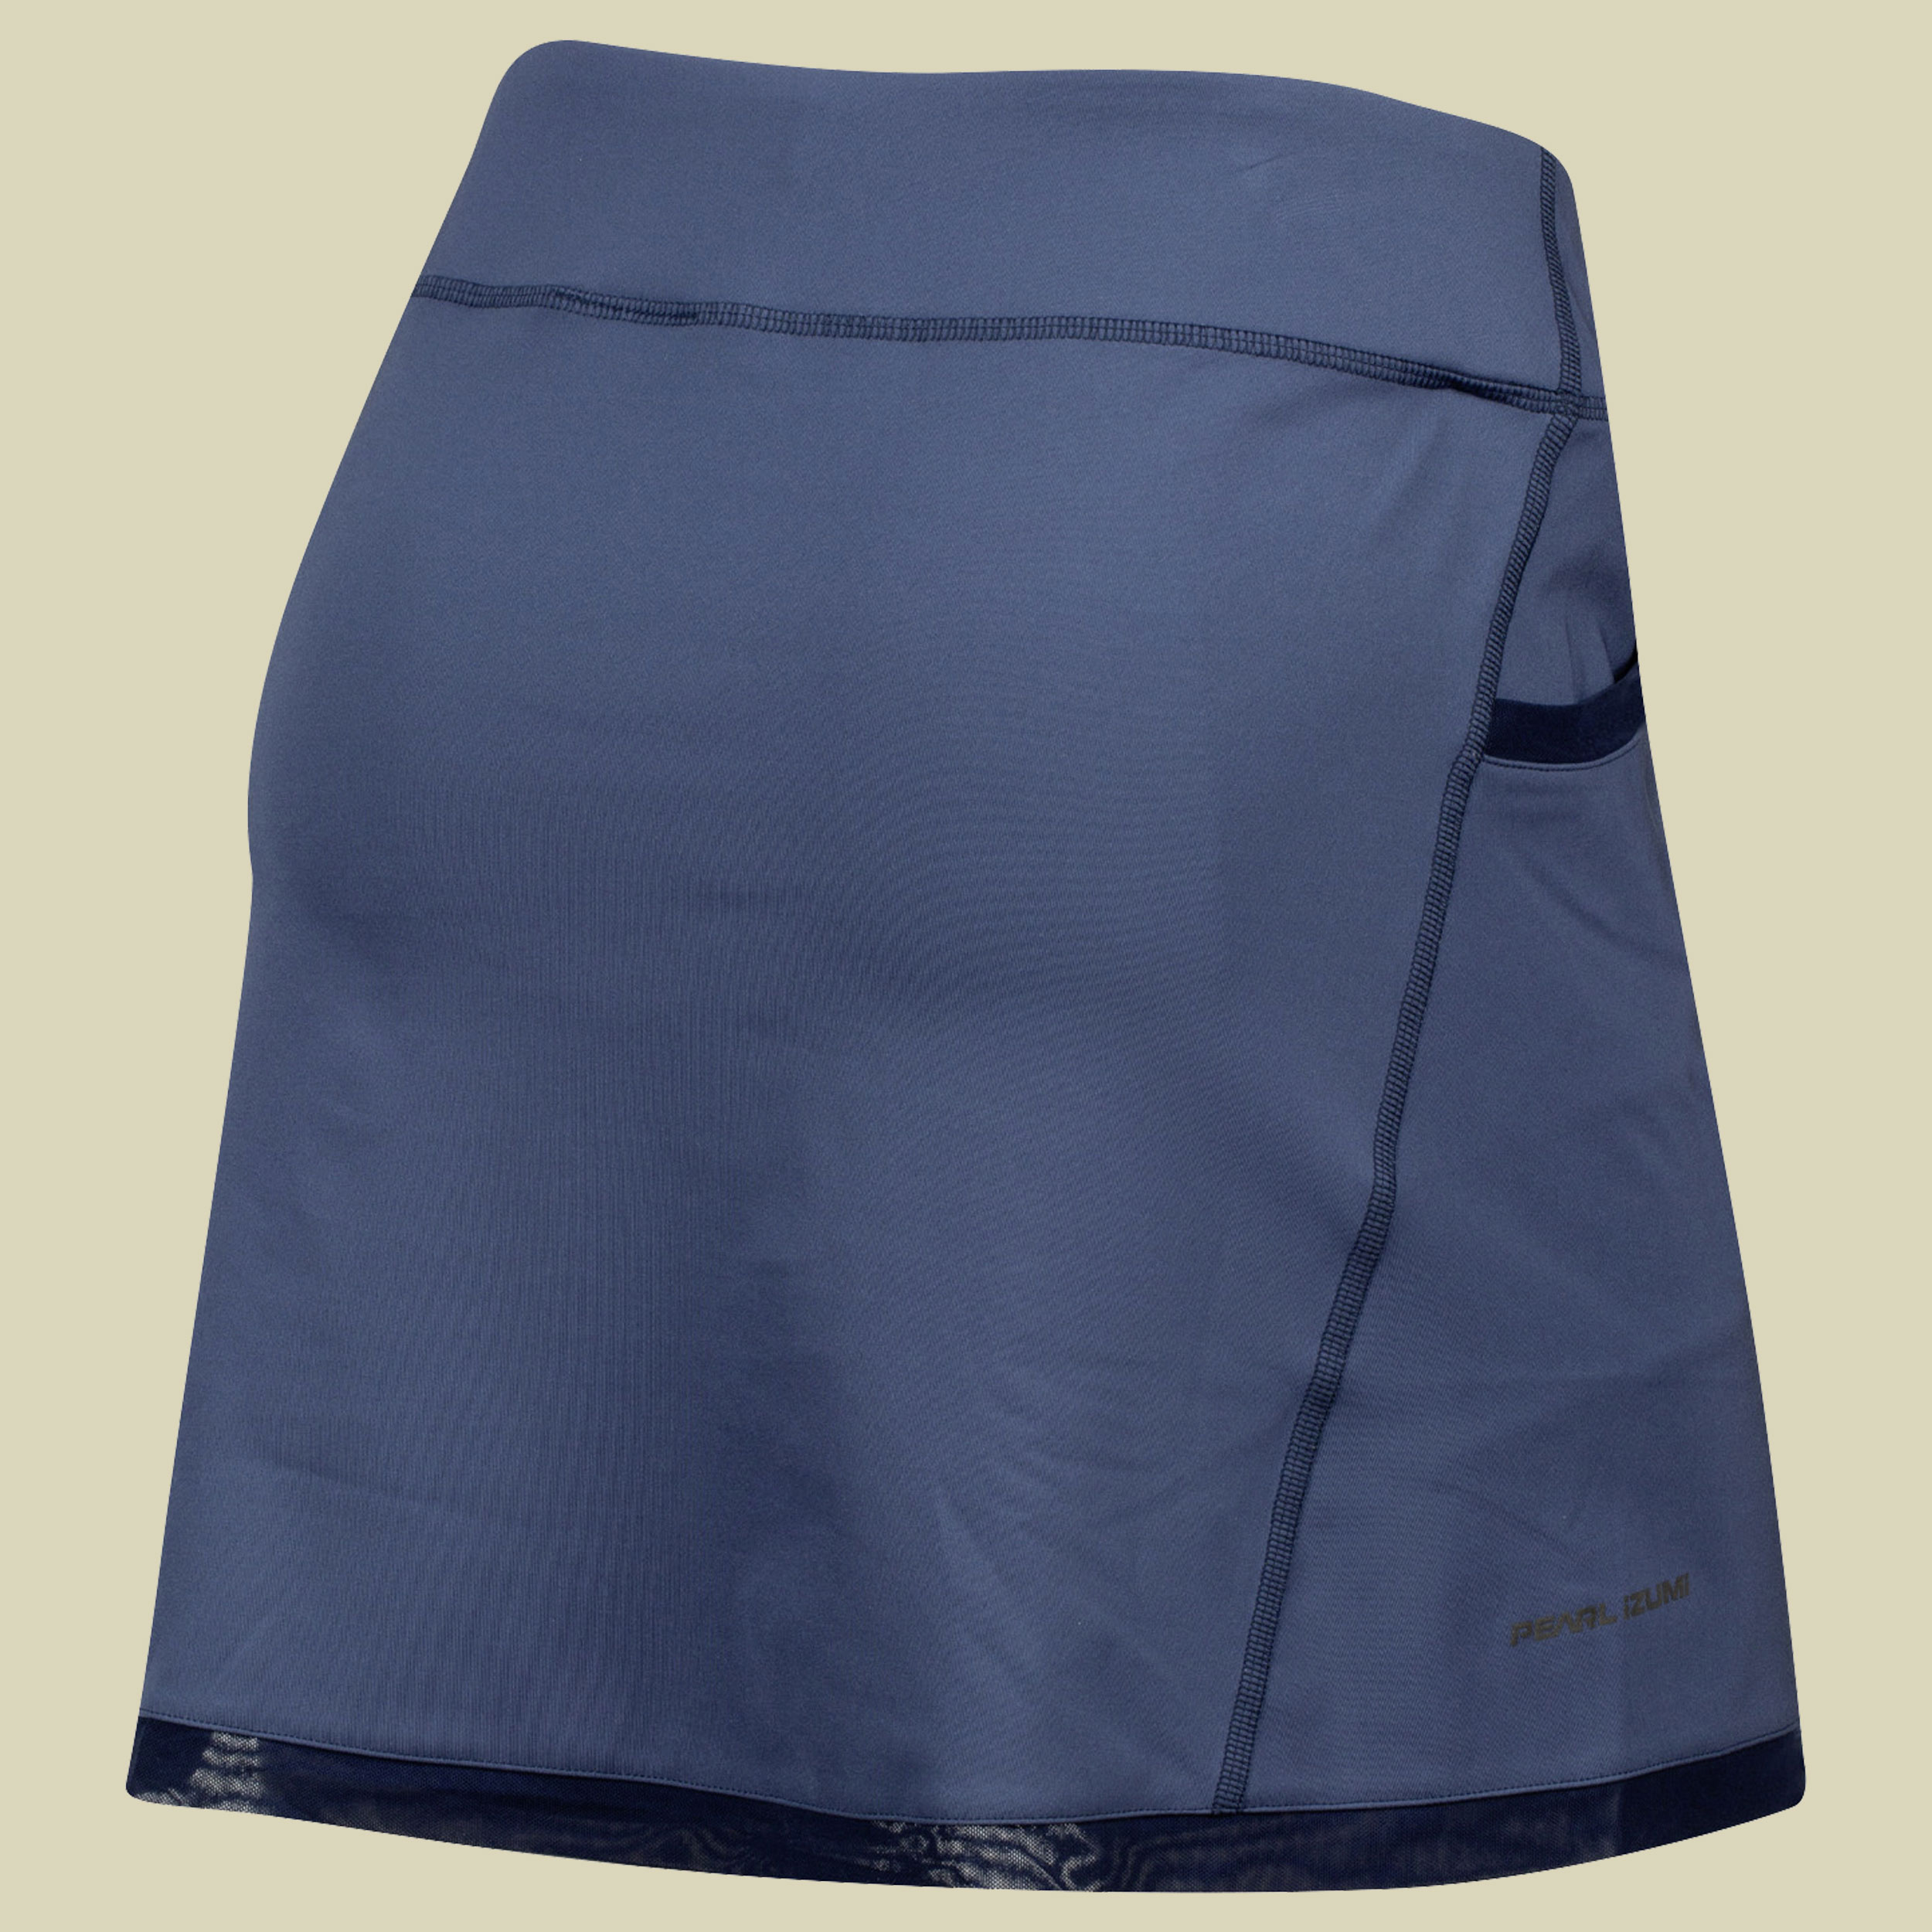 Sugar Skirt Women Größe S Farbe dark denim/navy deco